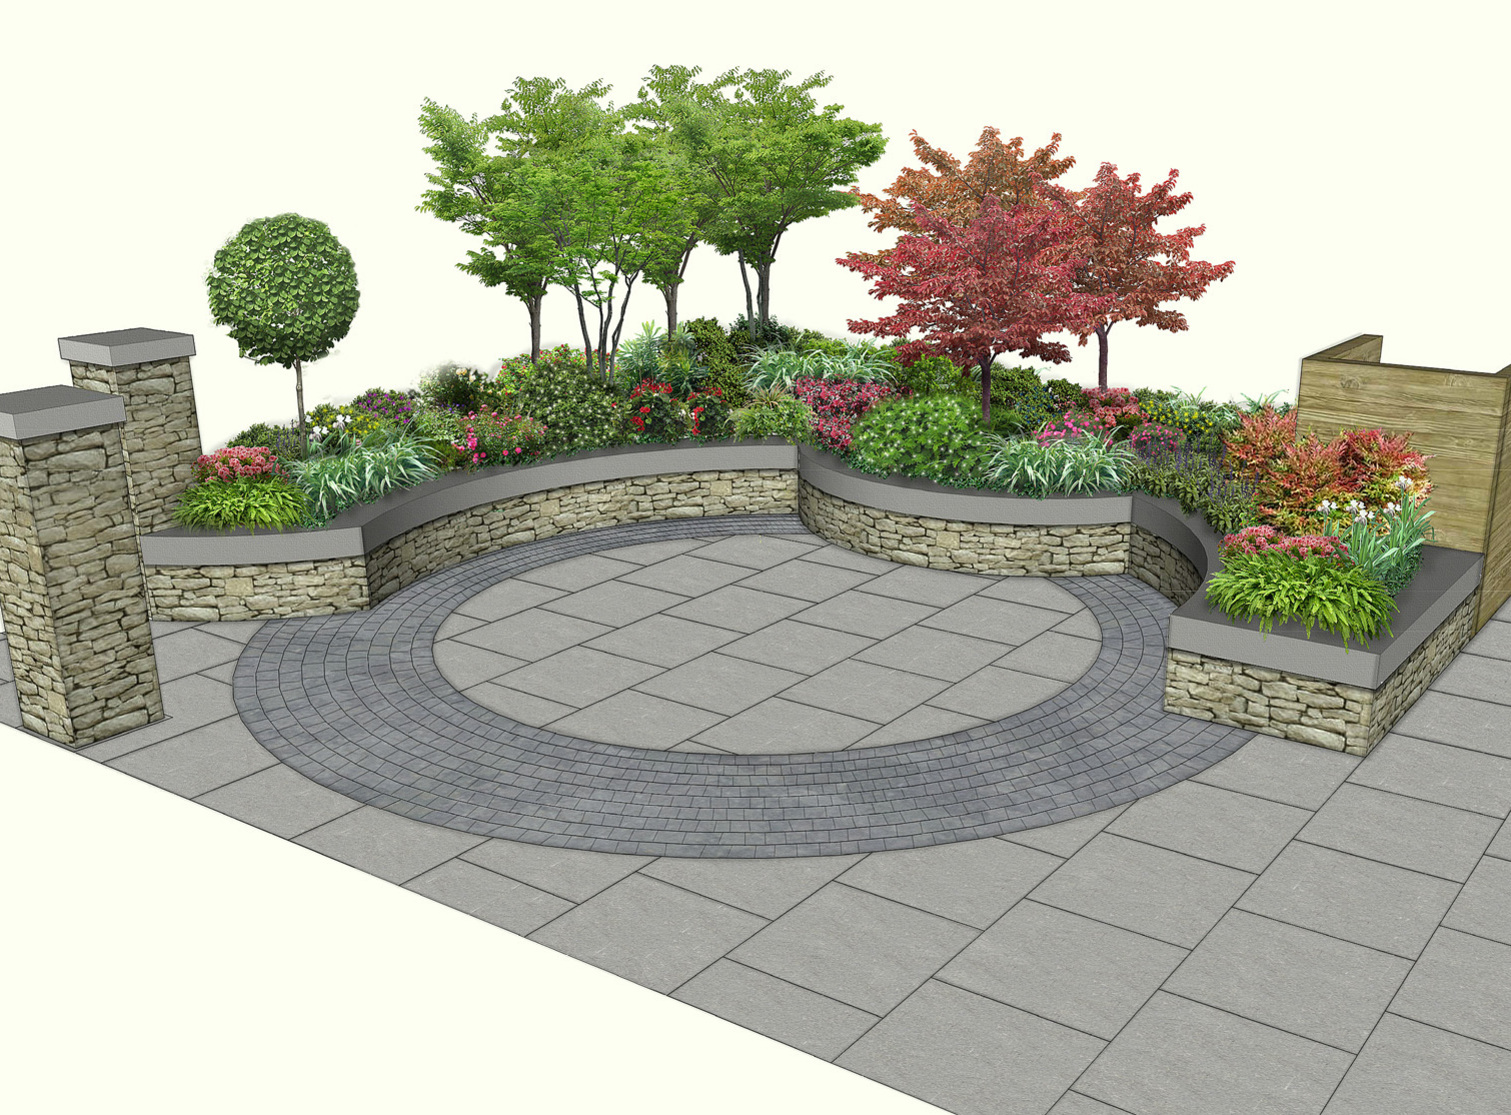 Garden Design for Raised Planter Bed, Milltown, Dublin 6